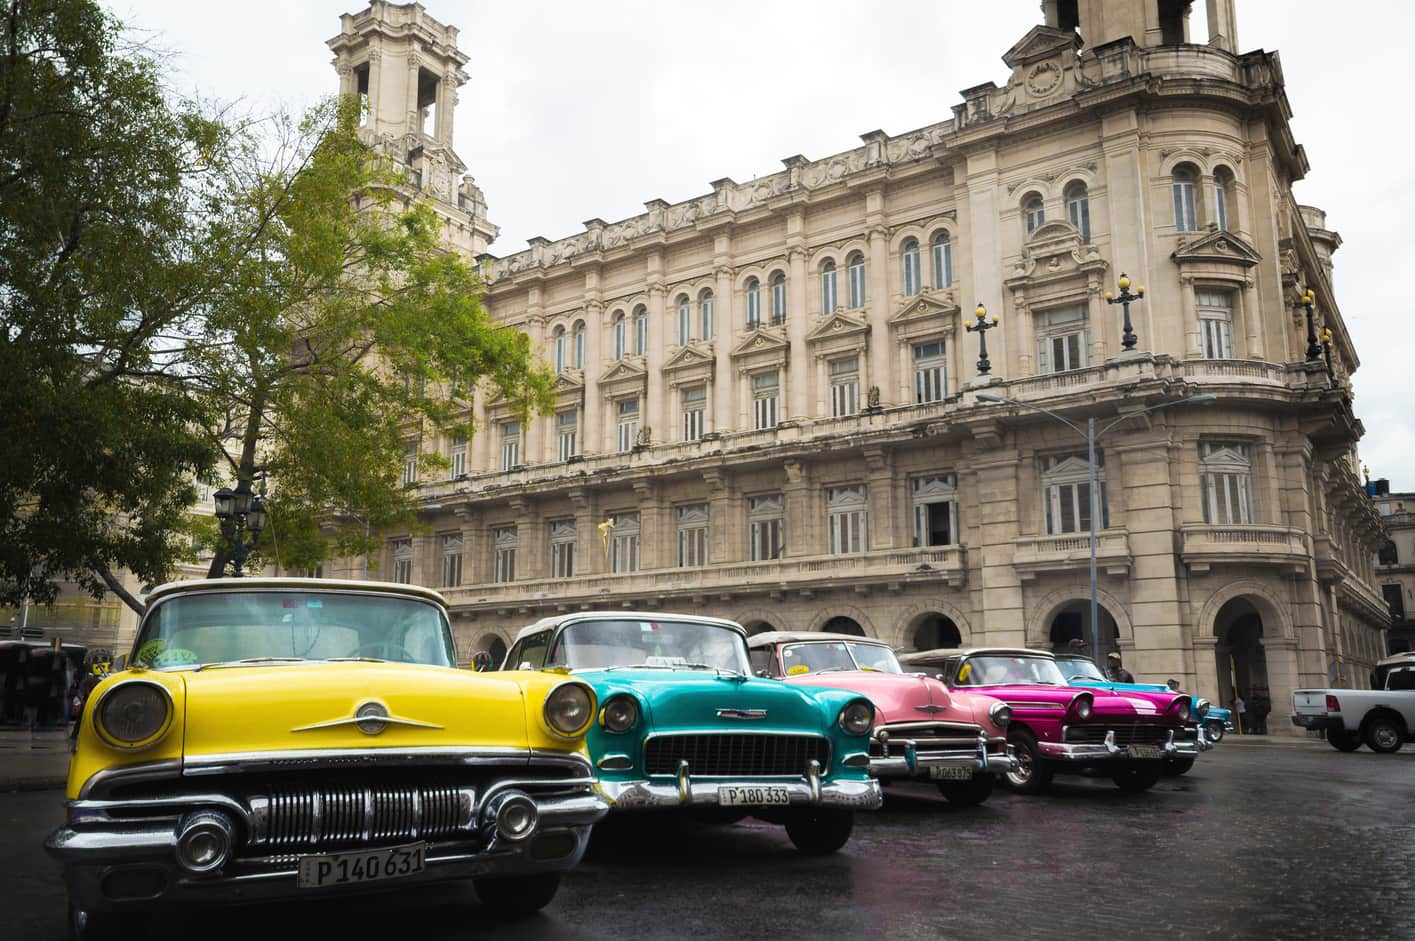 Coches viejos de colores La Habana Cuba. organizar viaje.